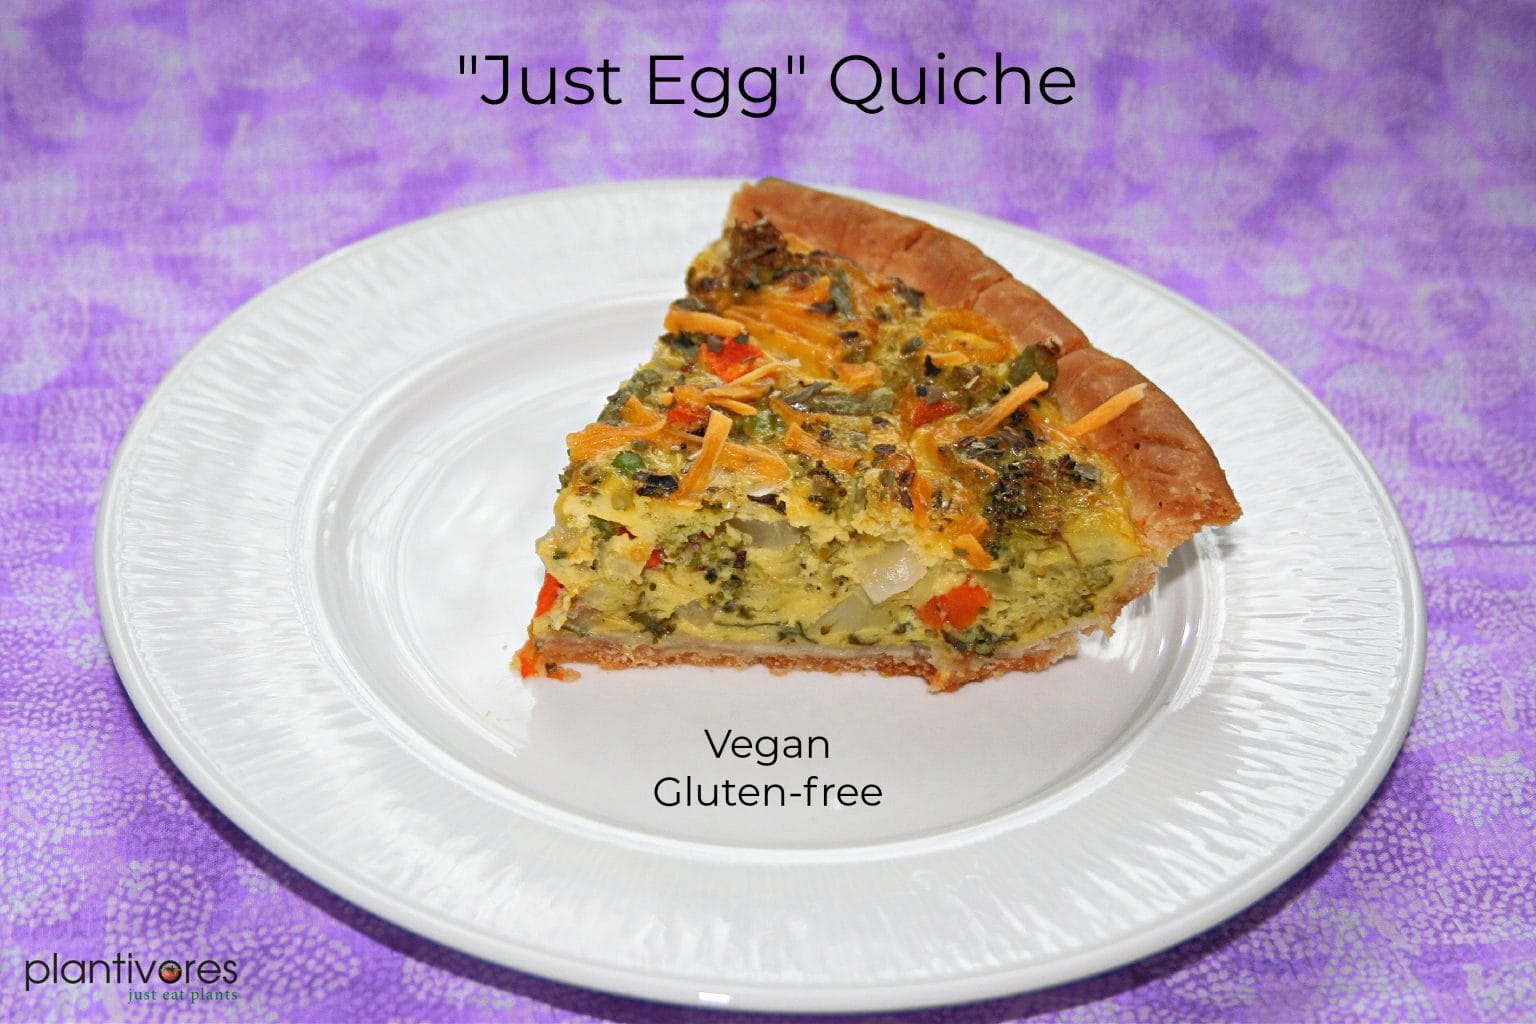 Just Egg Quiche (Vegan) - Plantivores - Best Gluten-free Vegan ...